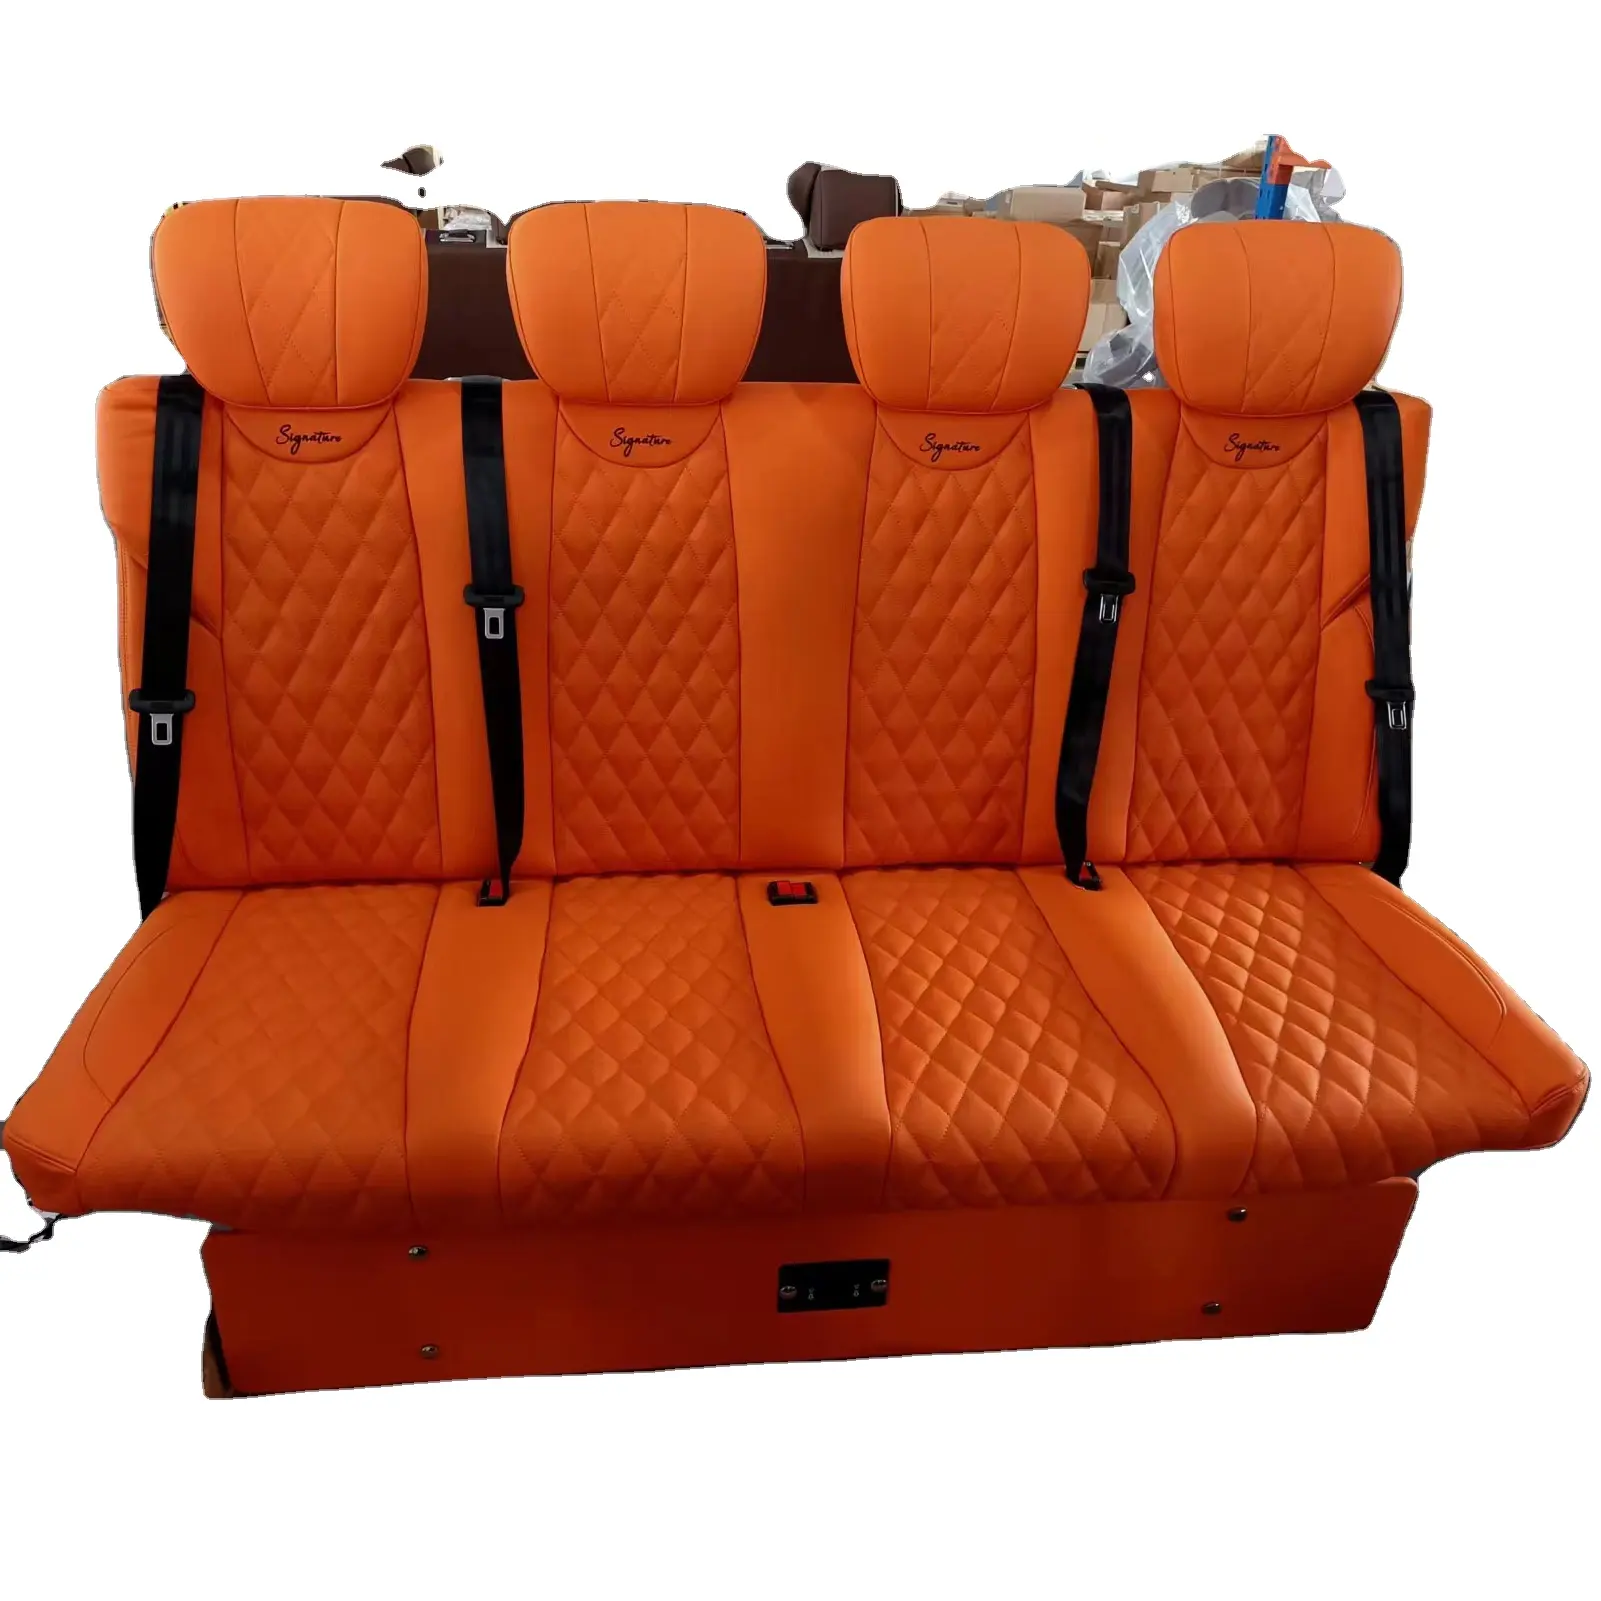 Сделанный на заказ Электрический 4-местный диван-кровать скамейка для мини-автобуса RV MPV Motorhome Caravan автомобильный диван скамейка сиденья